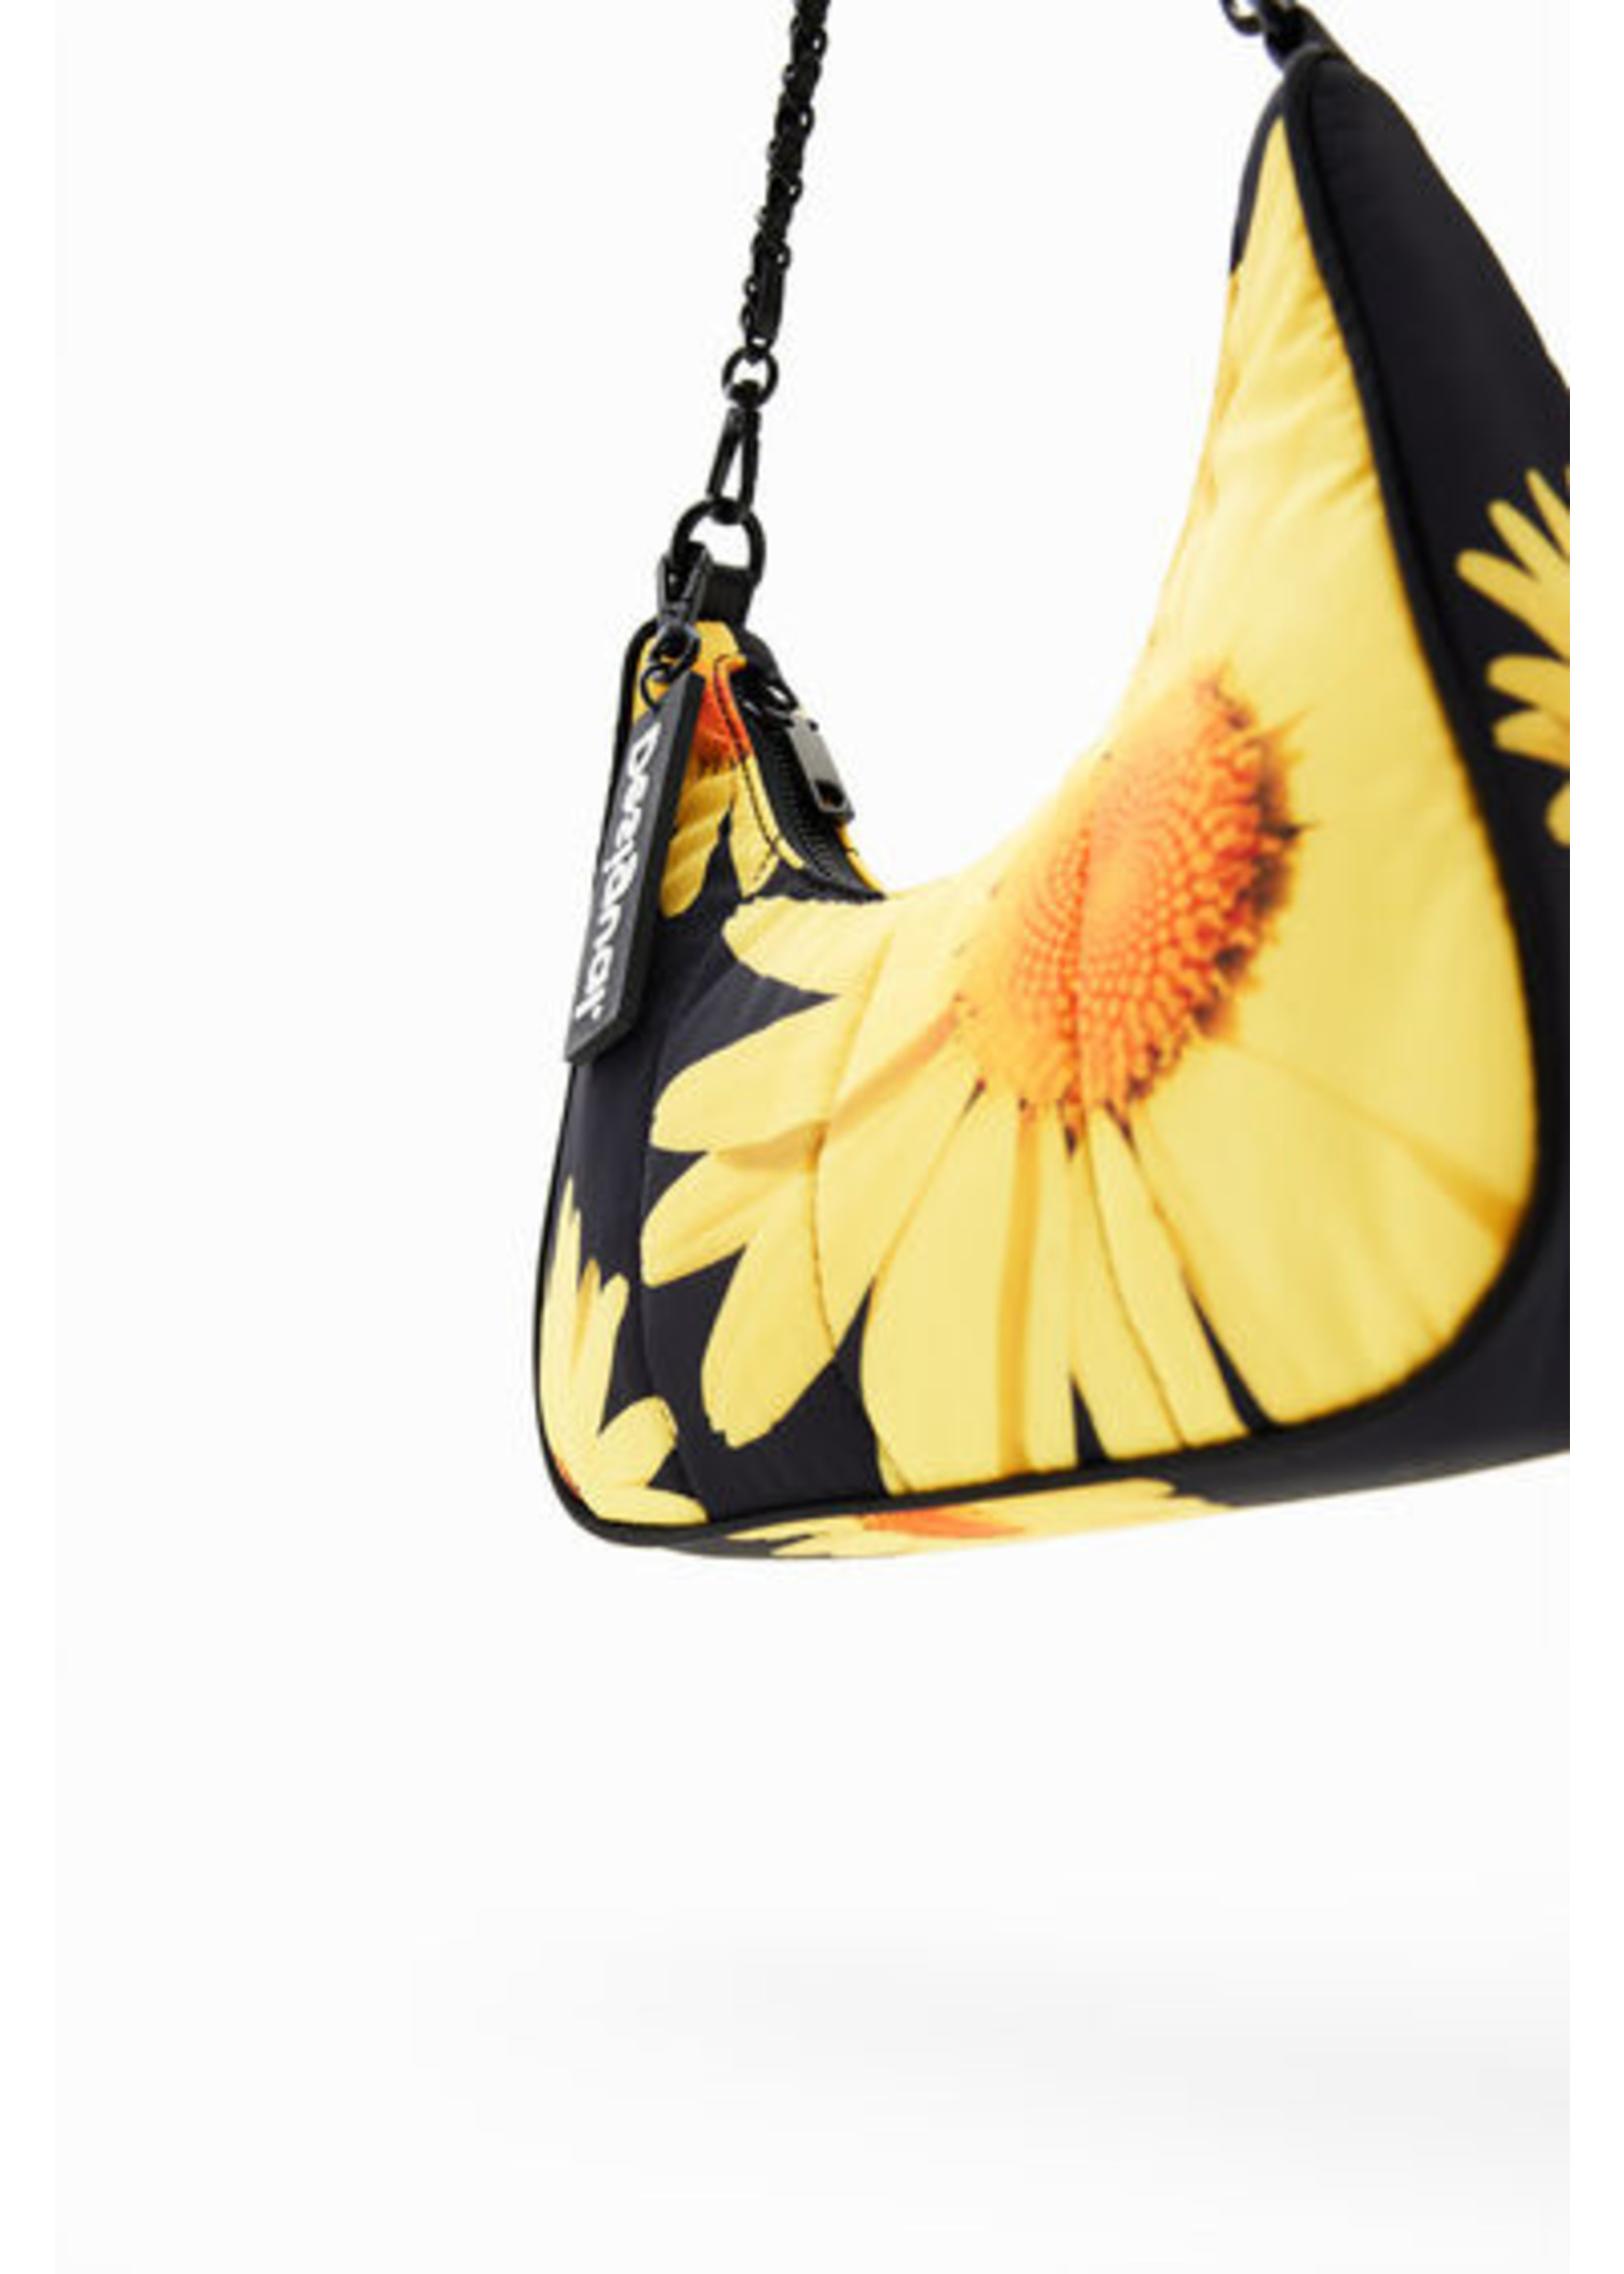 M. Christian Lacroix small floral bag - Lacroix espace boutique inc.